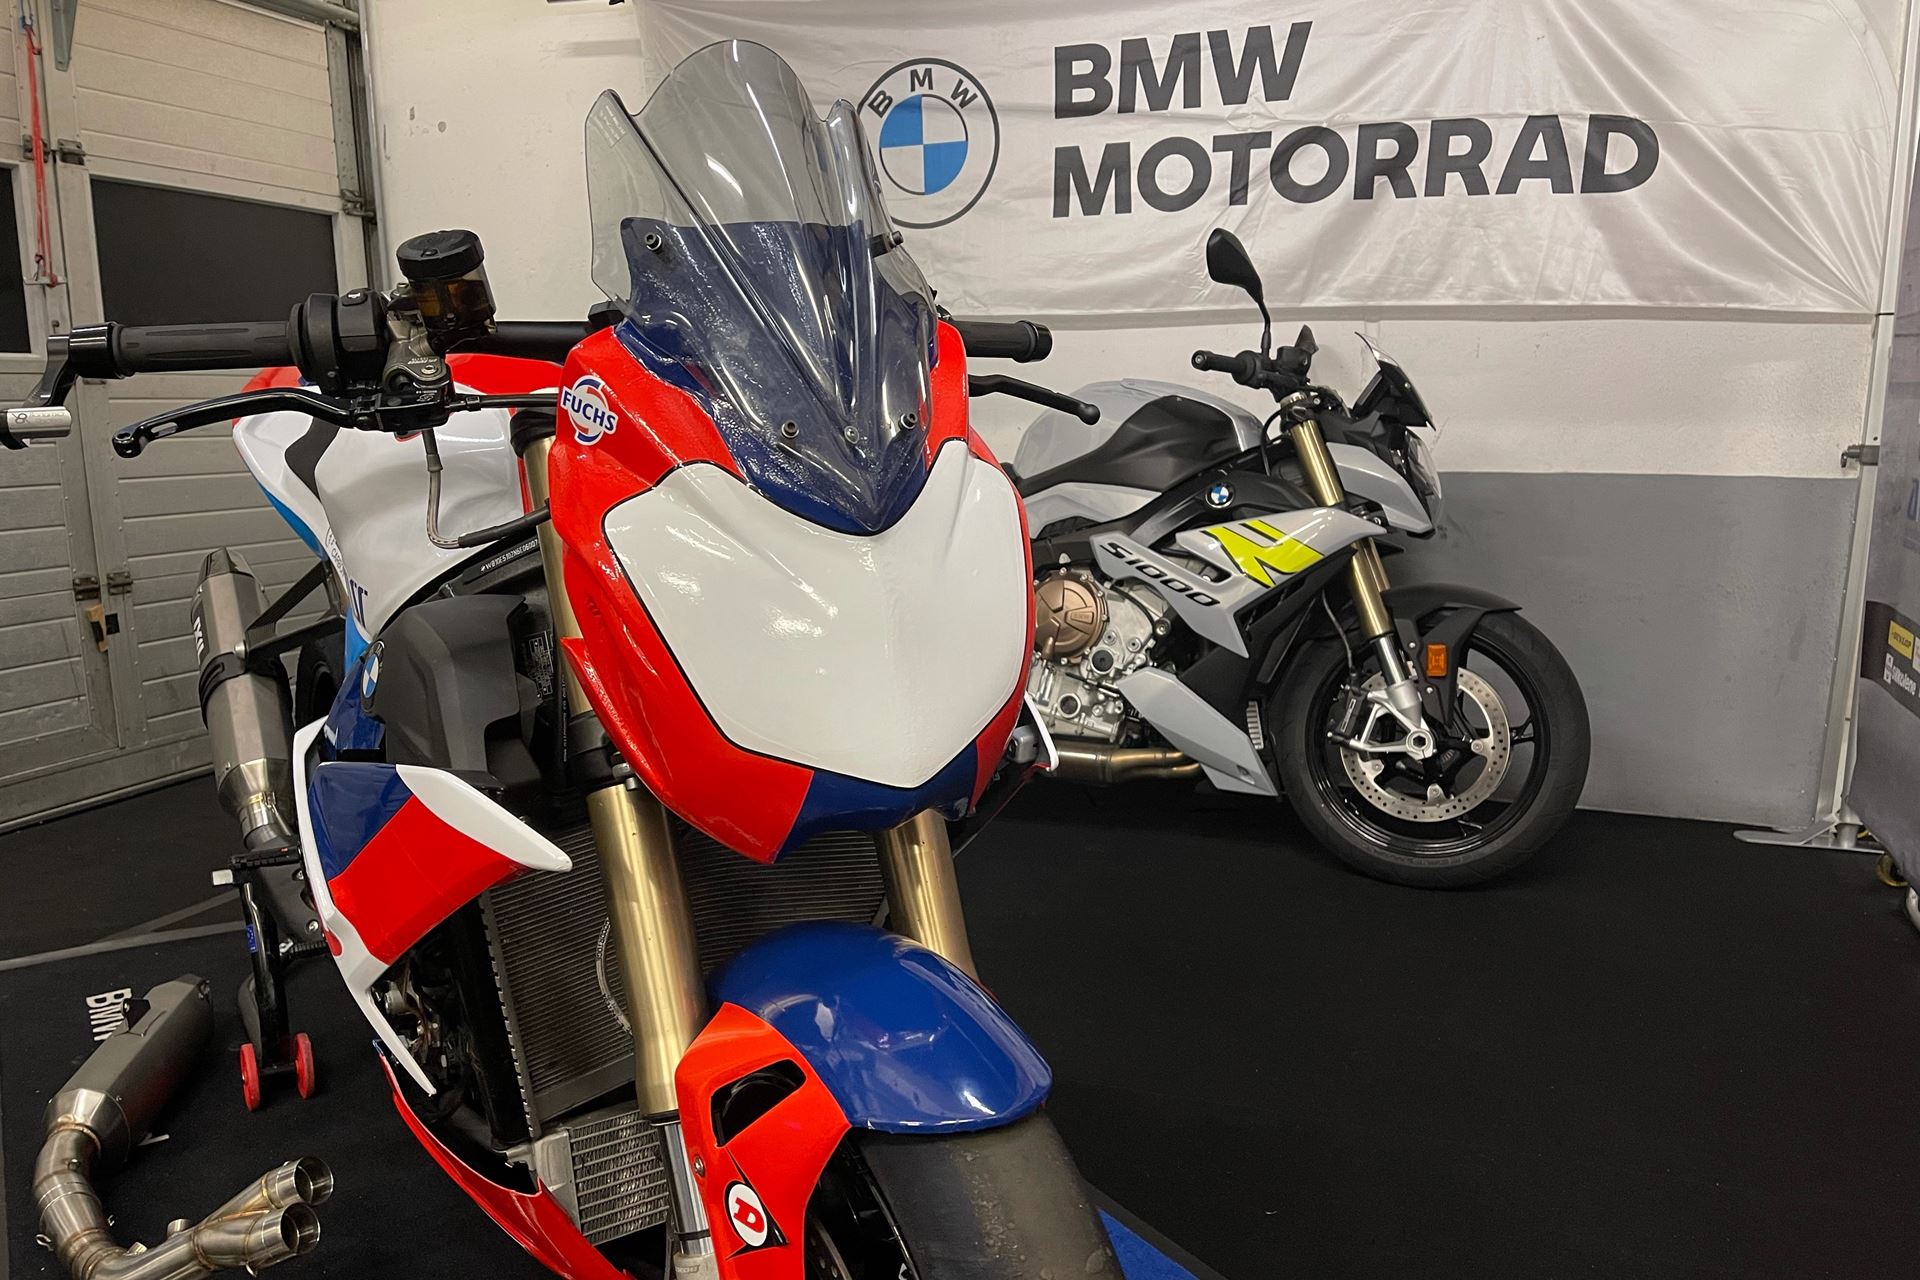 Troféu BMW S 1000 R vai animar as pistas em 2022! - Desporto - Andar de Moto